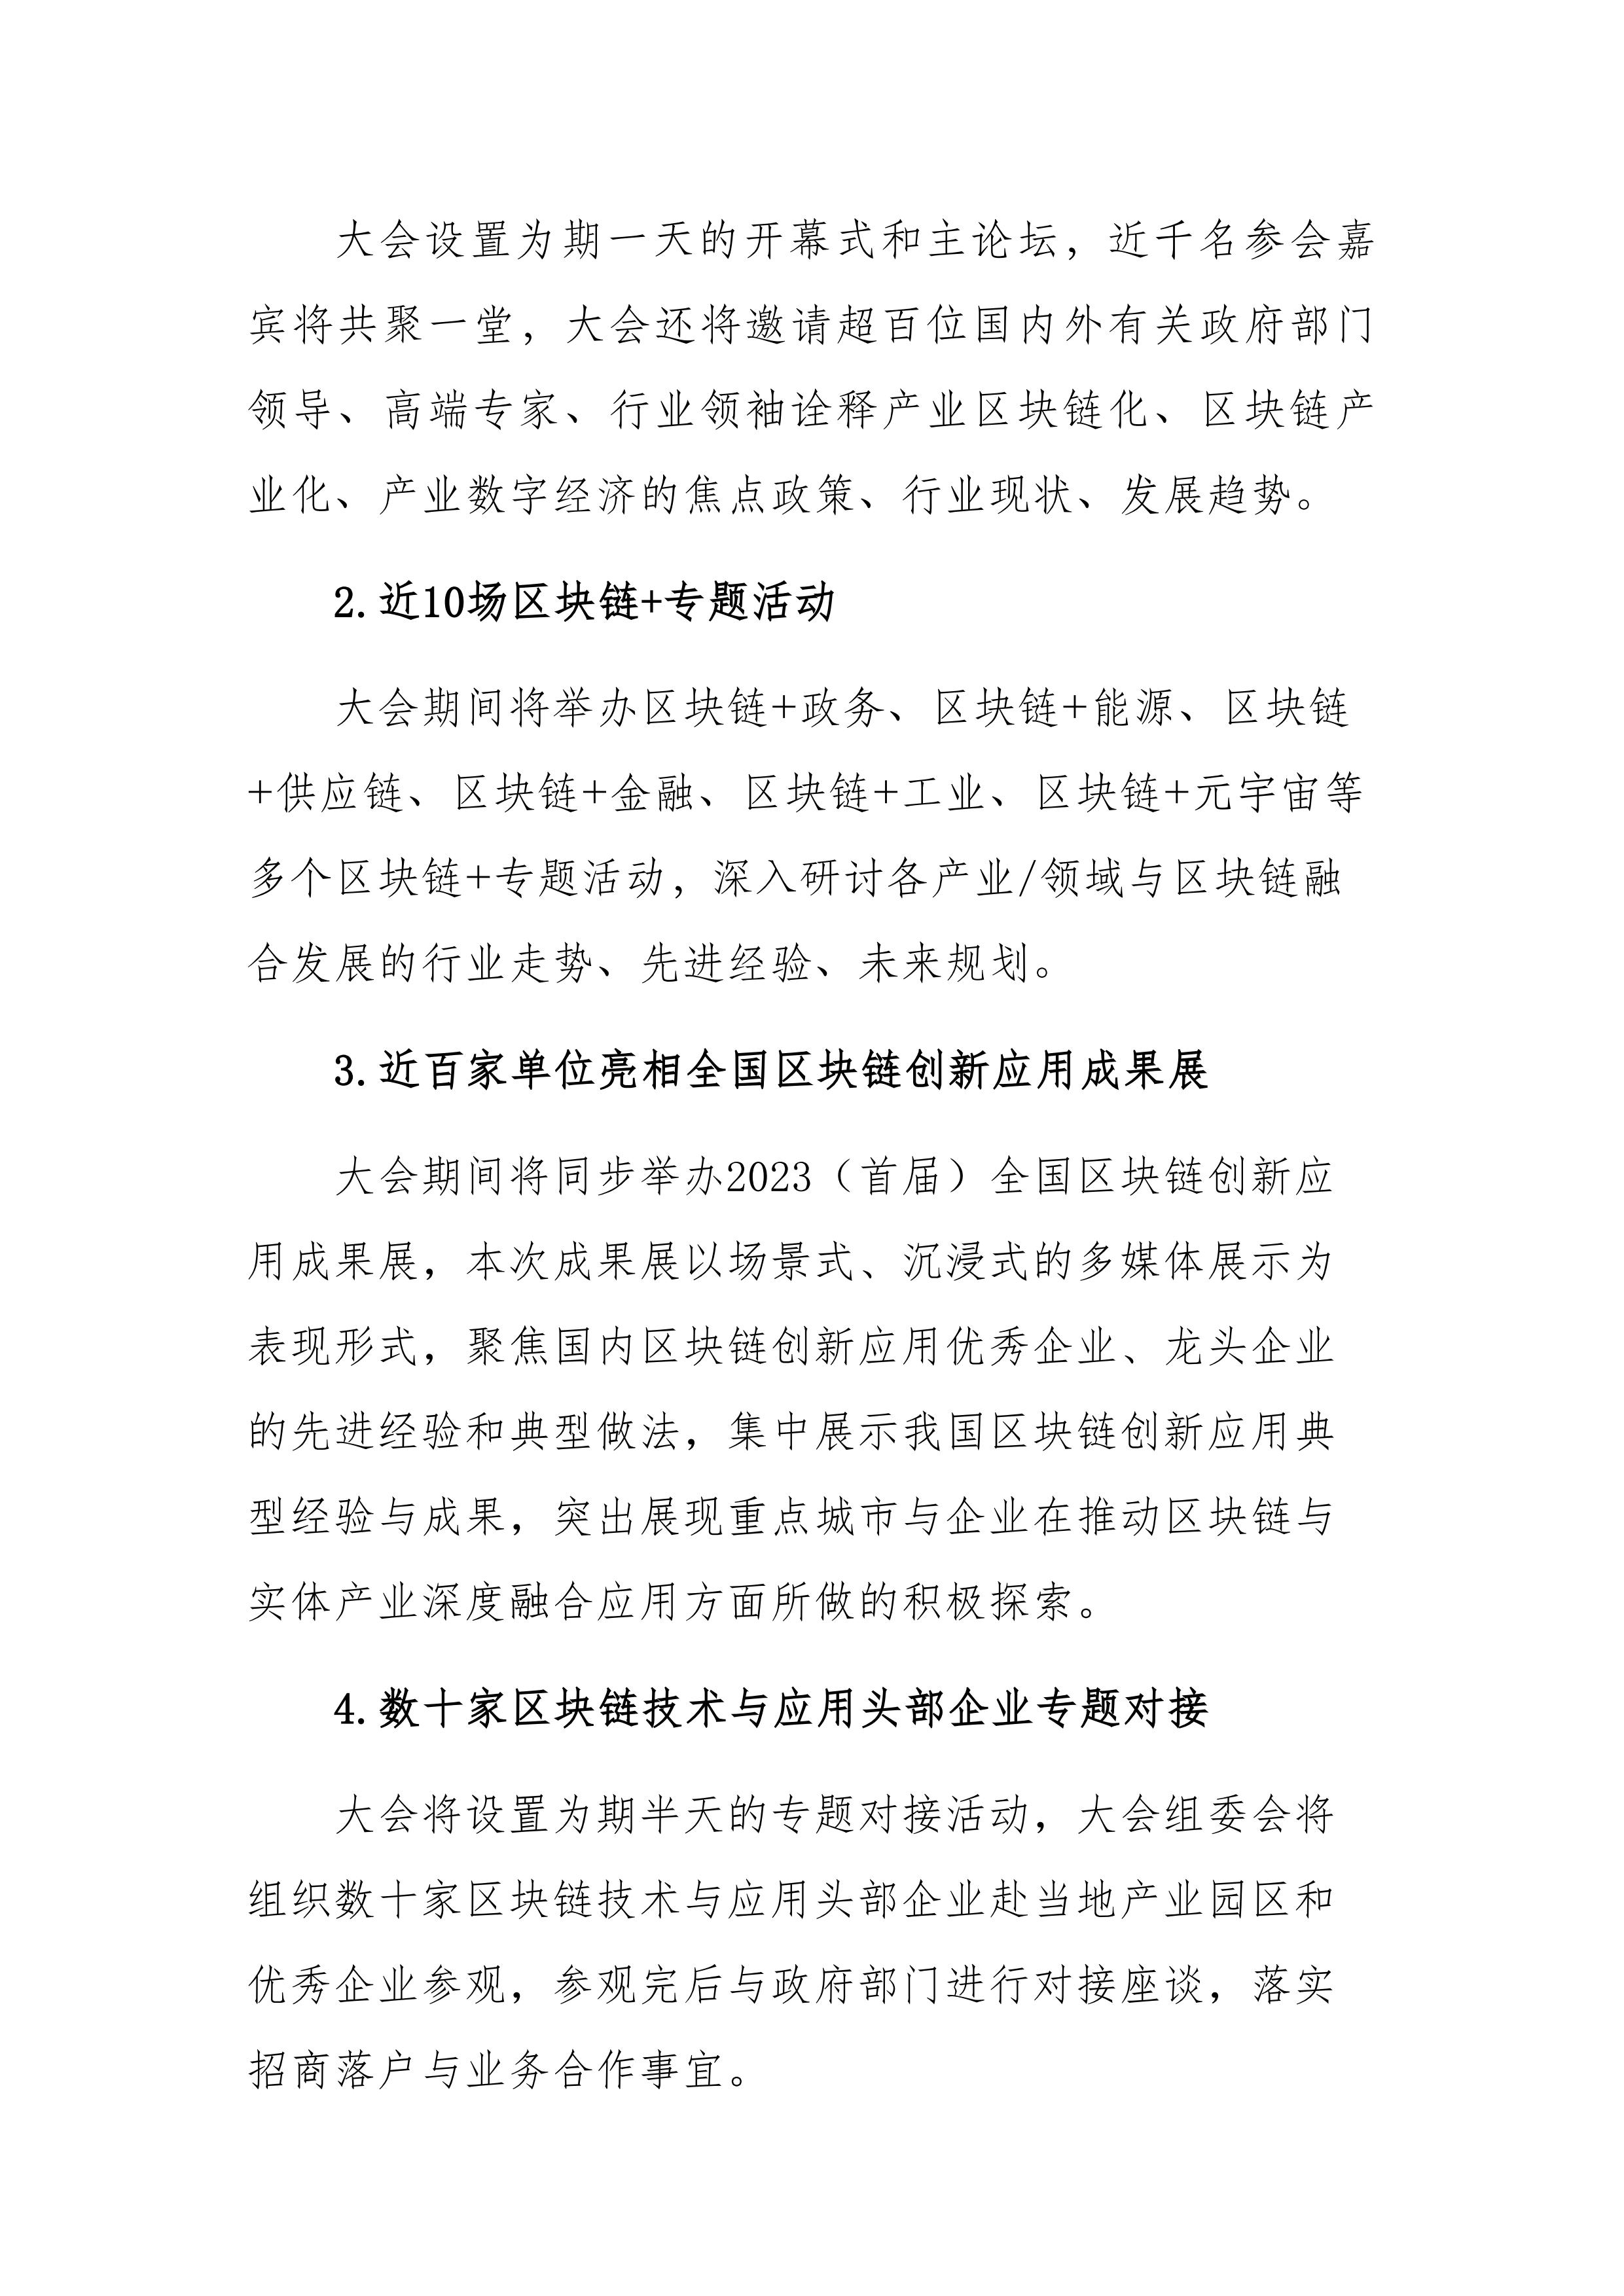 关于召开2023（第六届）中国产业区块链峰会的通知_03.jpg